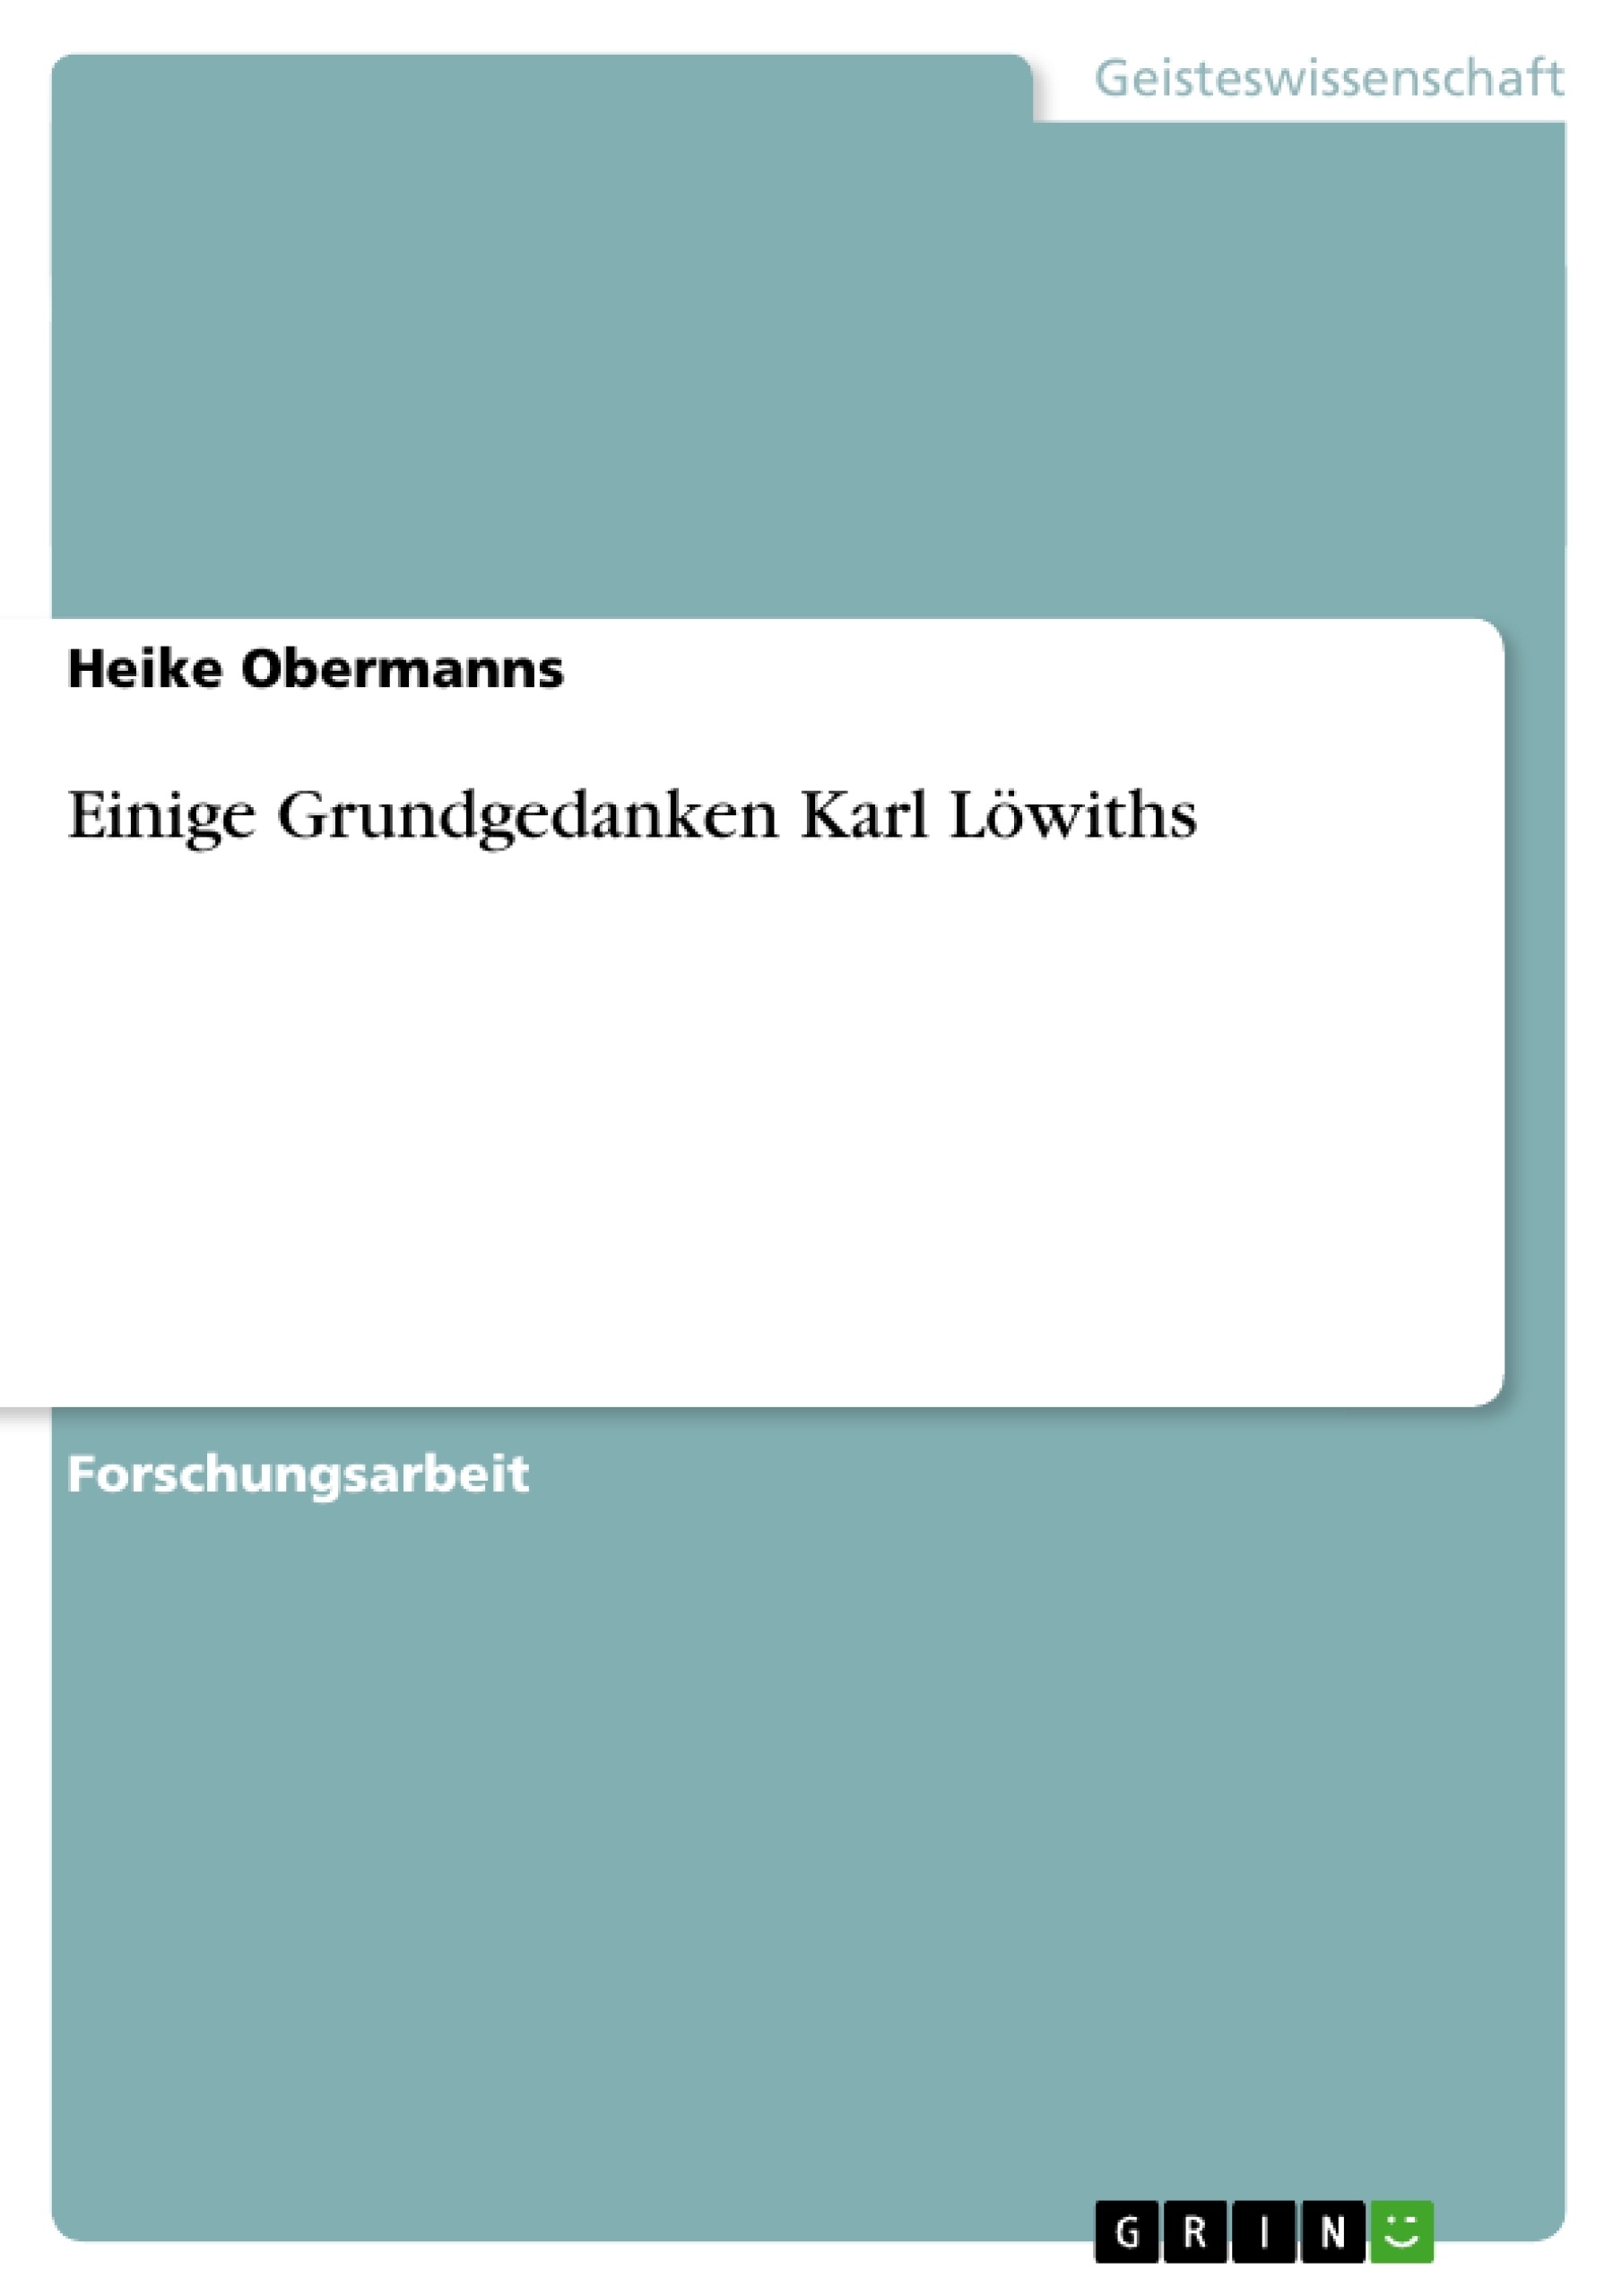 Título: Einige Grundgedanken Karl Löwiths